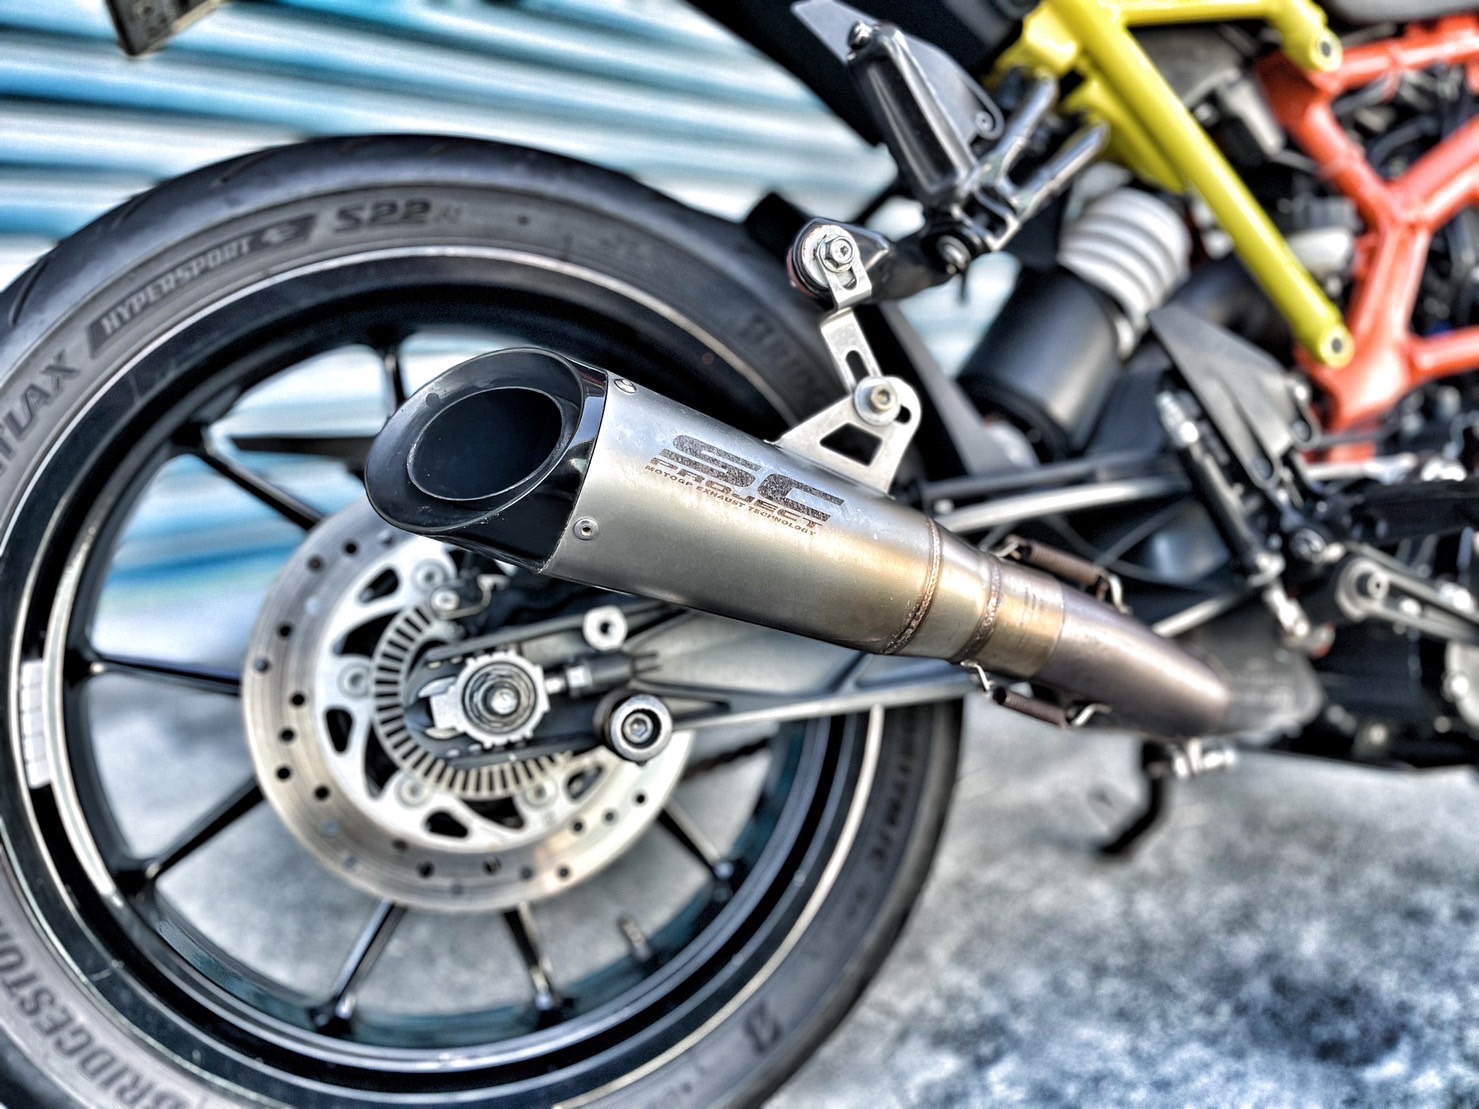 【小資族二手重機買賣】KTM 390DUKE - 「Webike-摩托車市」 Sc排氣管 野獸派Case蓋 視覺改裝 無摔車無事故 小資族二手重機買賣